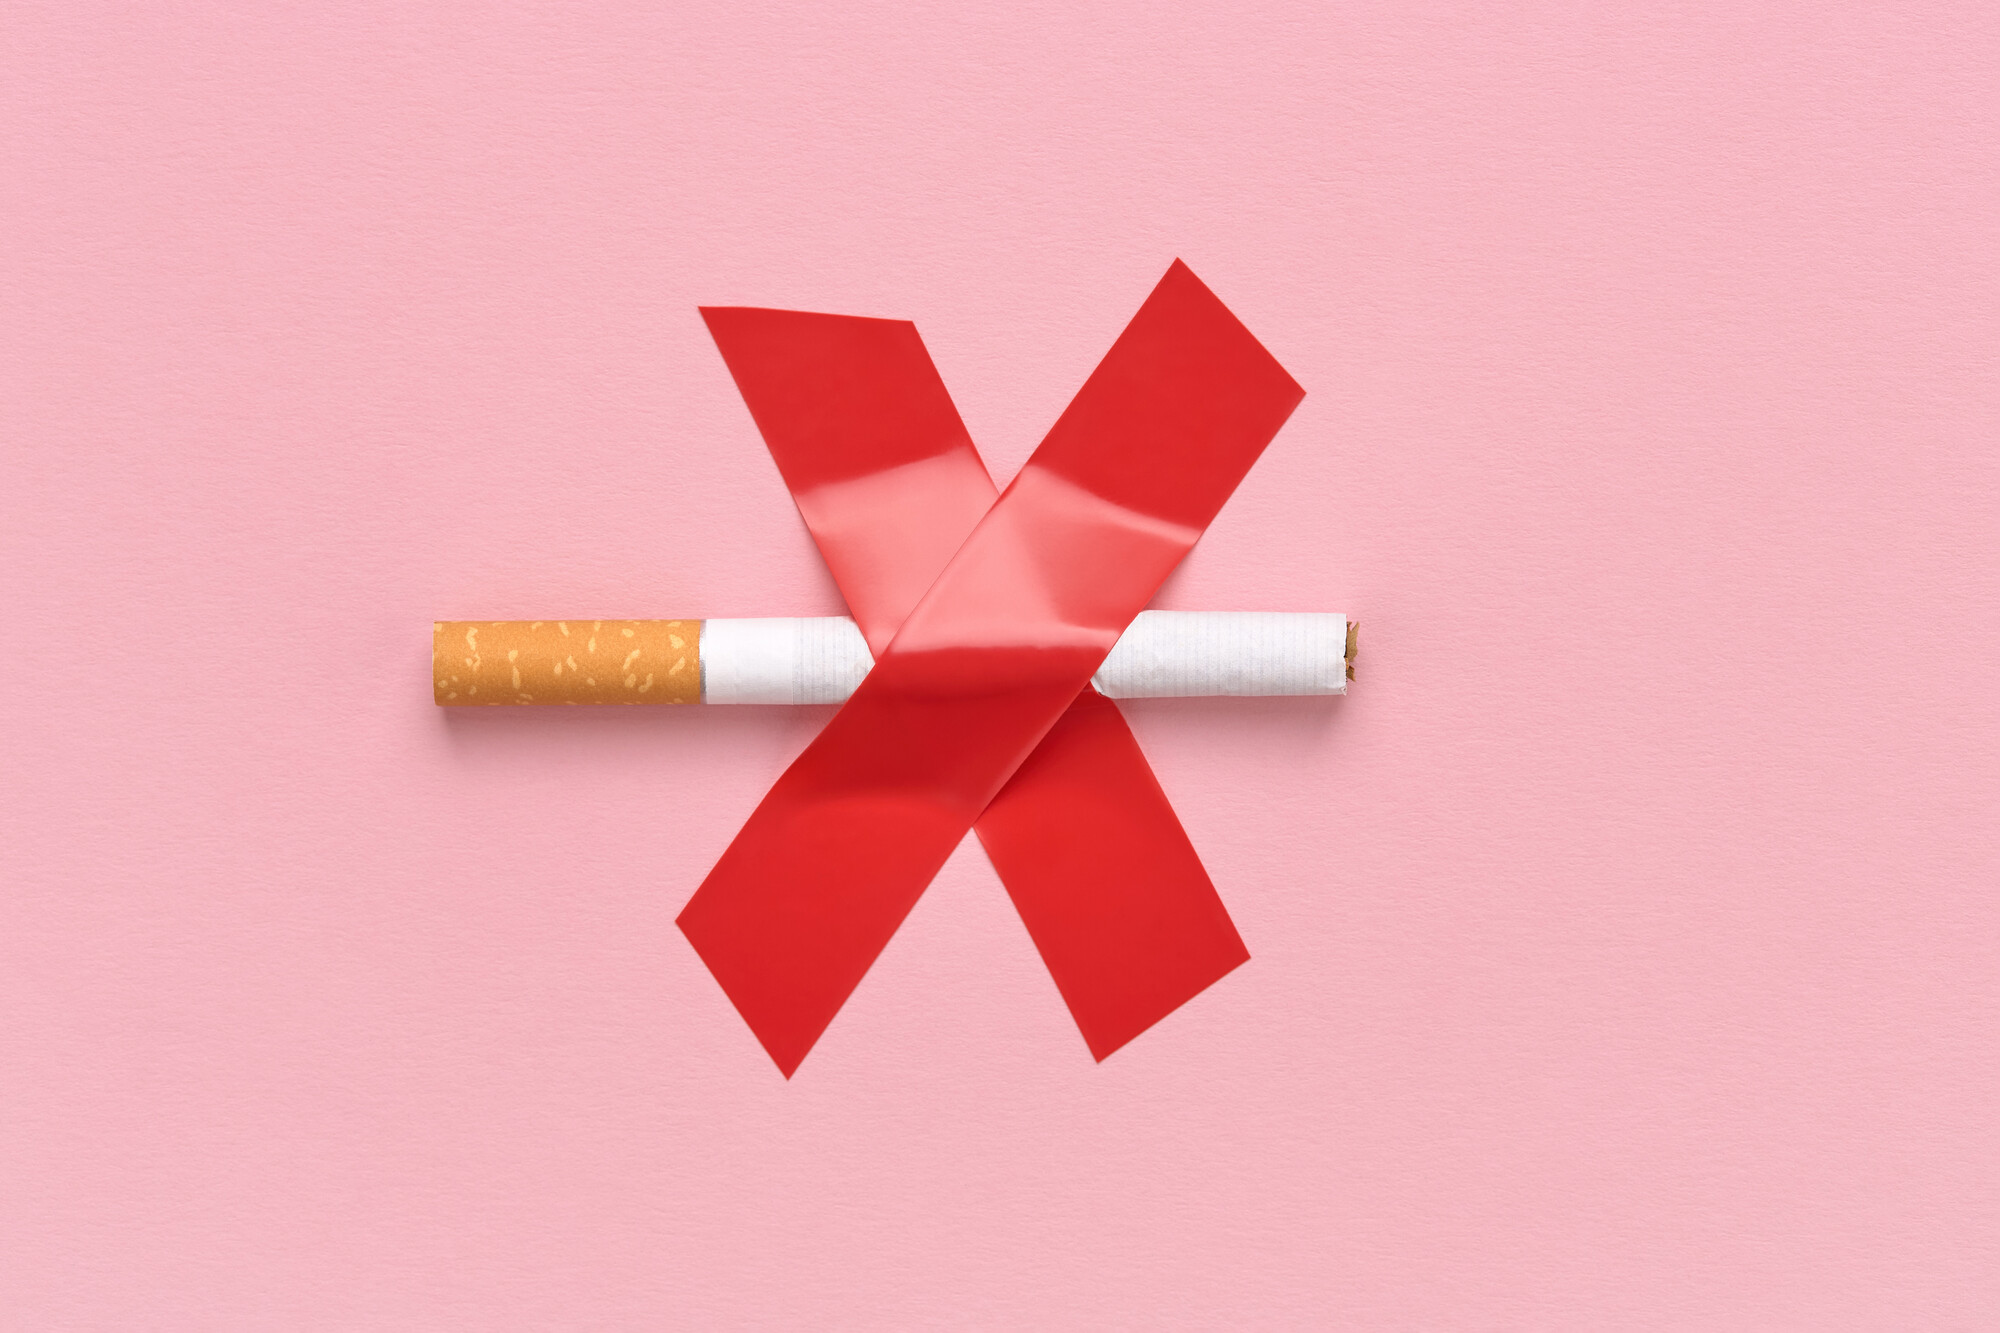 Ein aktualisiertes Cochrane-Review hat untersucht, was bei der Rauchentwöhnung hilft. Neben Vareniclin und Cytisin wurden auch Nikotin-Pflaster, Nikotin-Kaugummi, Bupropion und E-Zigarette unter die Lupe genommen.